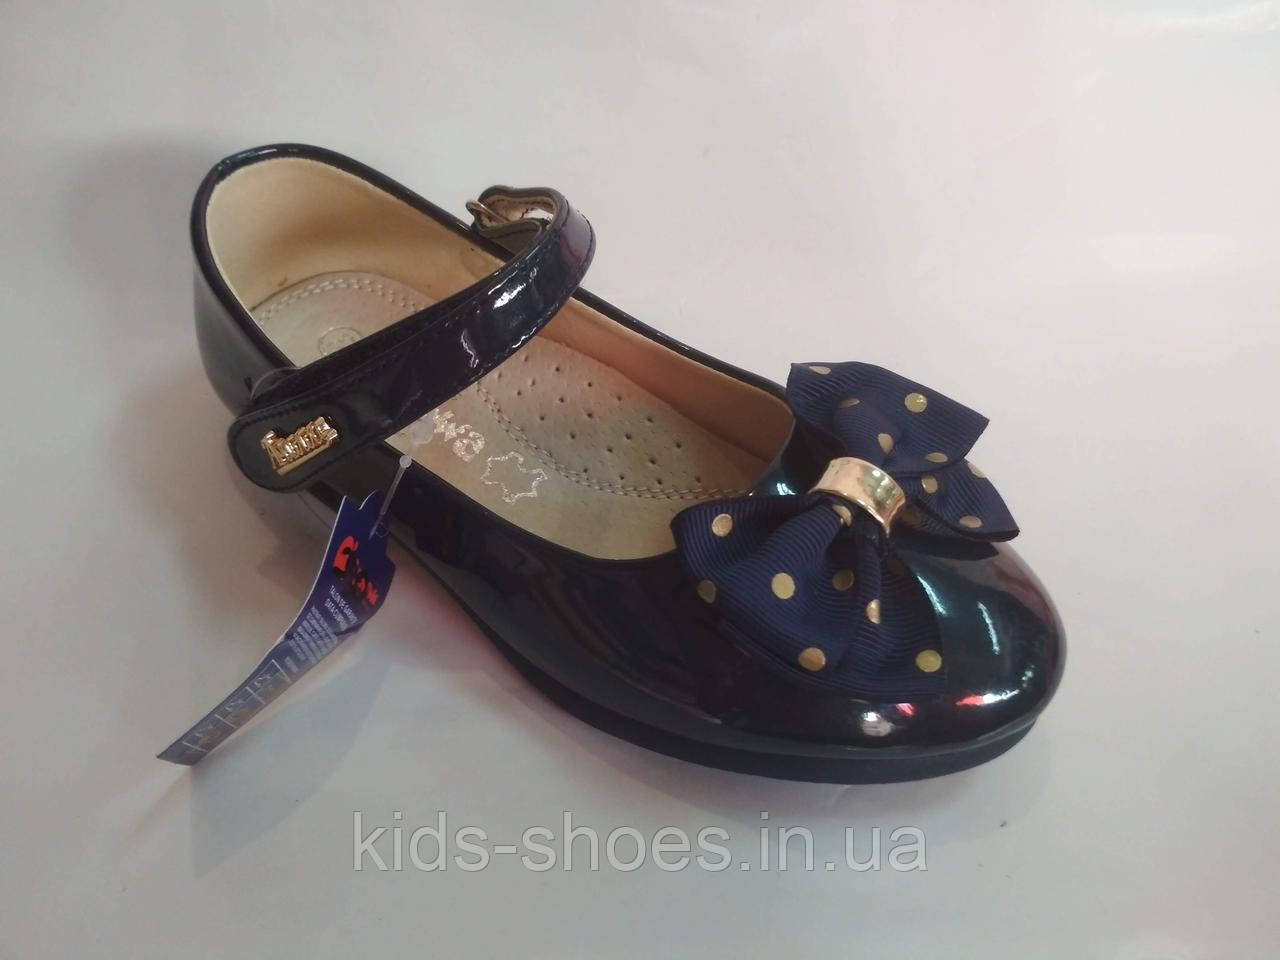 Дитячі лакові туфлі Clibee-Apawwa дівчинка 26-15.5 см